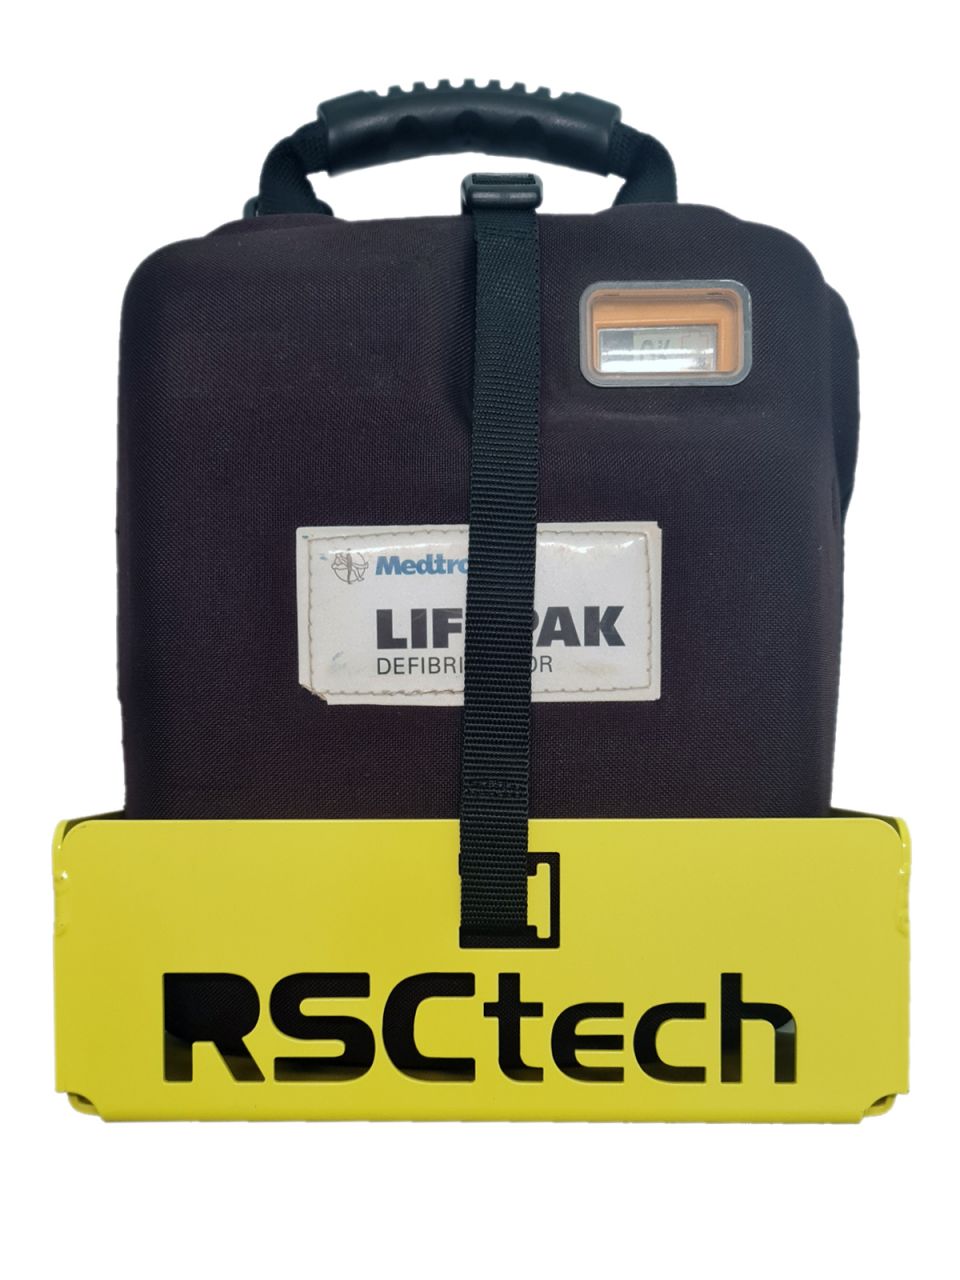 RSCtech defibrillátor tartó - LIFEPAK 1000 fali tartó gépjárműbe - 10G TÜV tanúsítvány